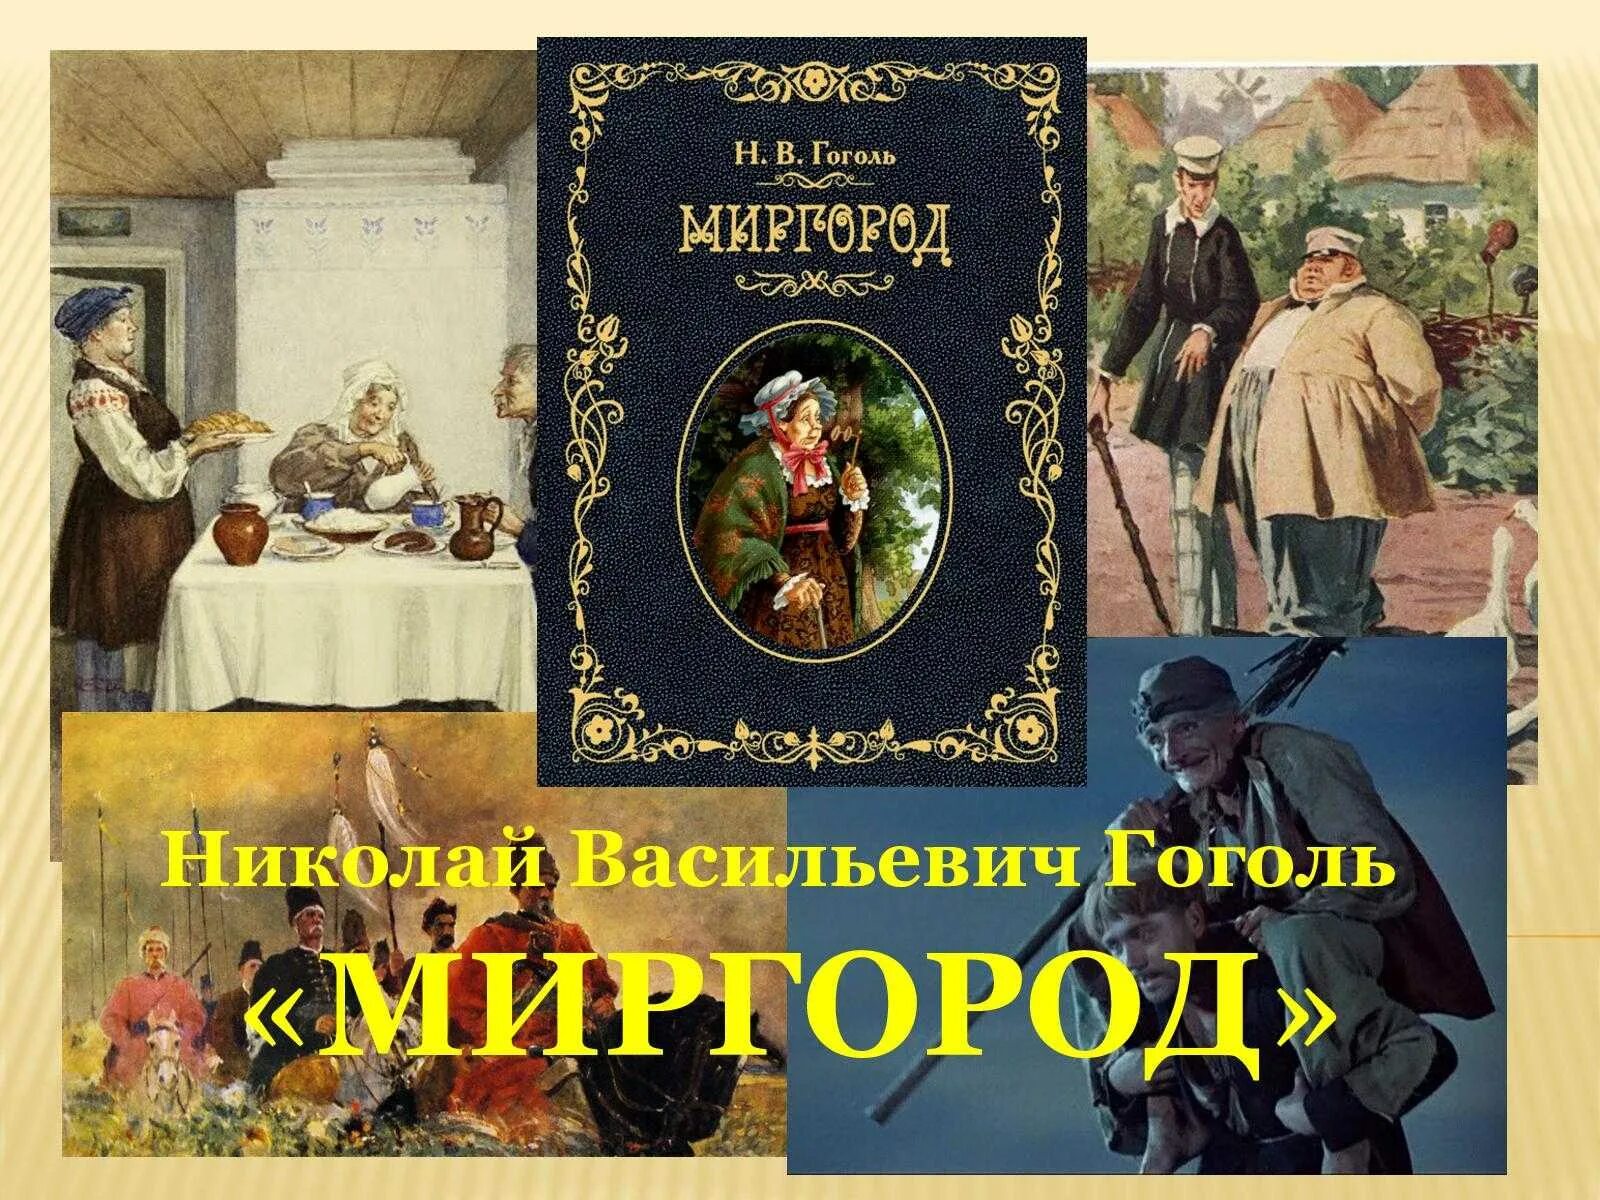 Какие произведения есть у гоголя. Гоголь сборник повестей Миргород. Миргород Гоголь 1835.